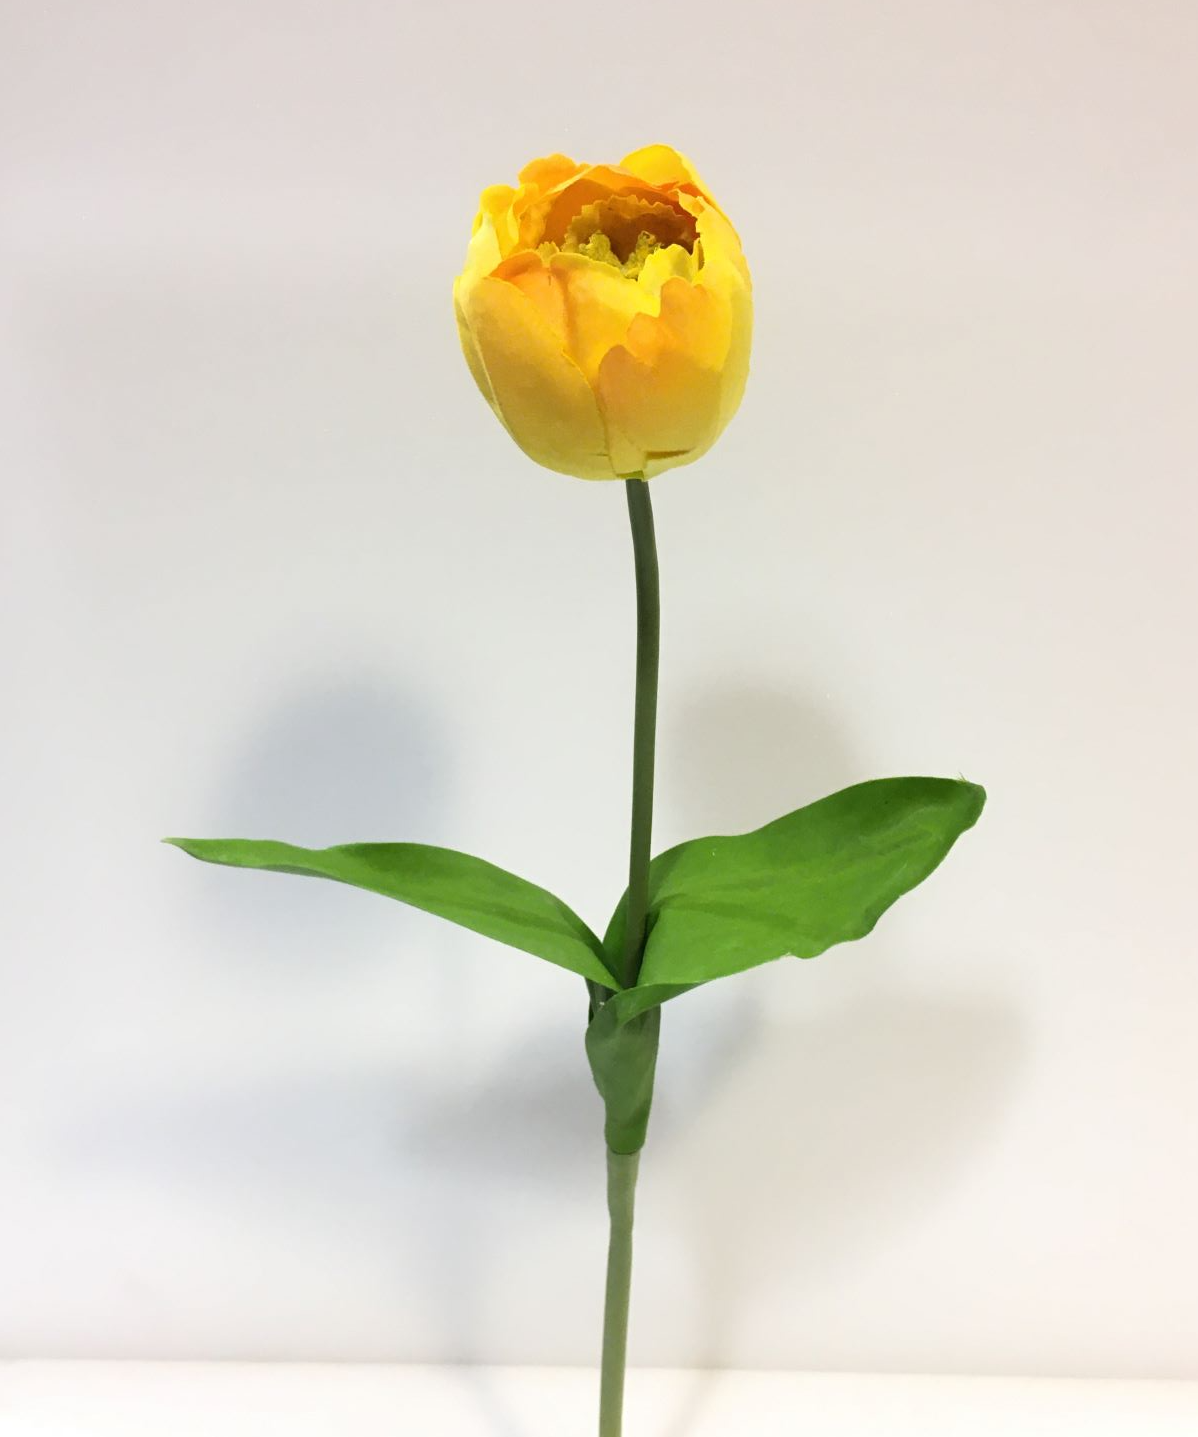 Tulipano giallo alto cm 43.  Fiore artificiale in tessuto. In negozio e online su tuttochic.it